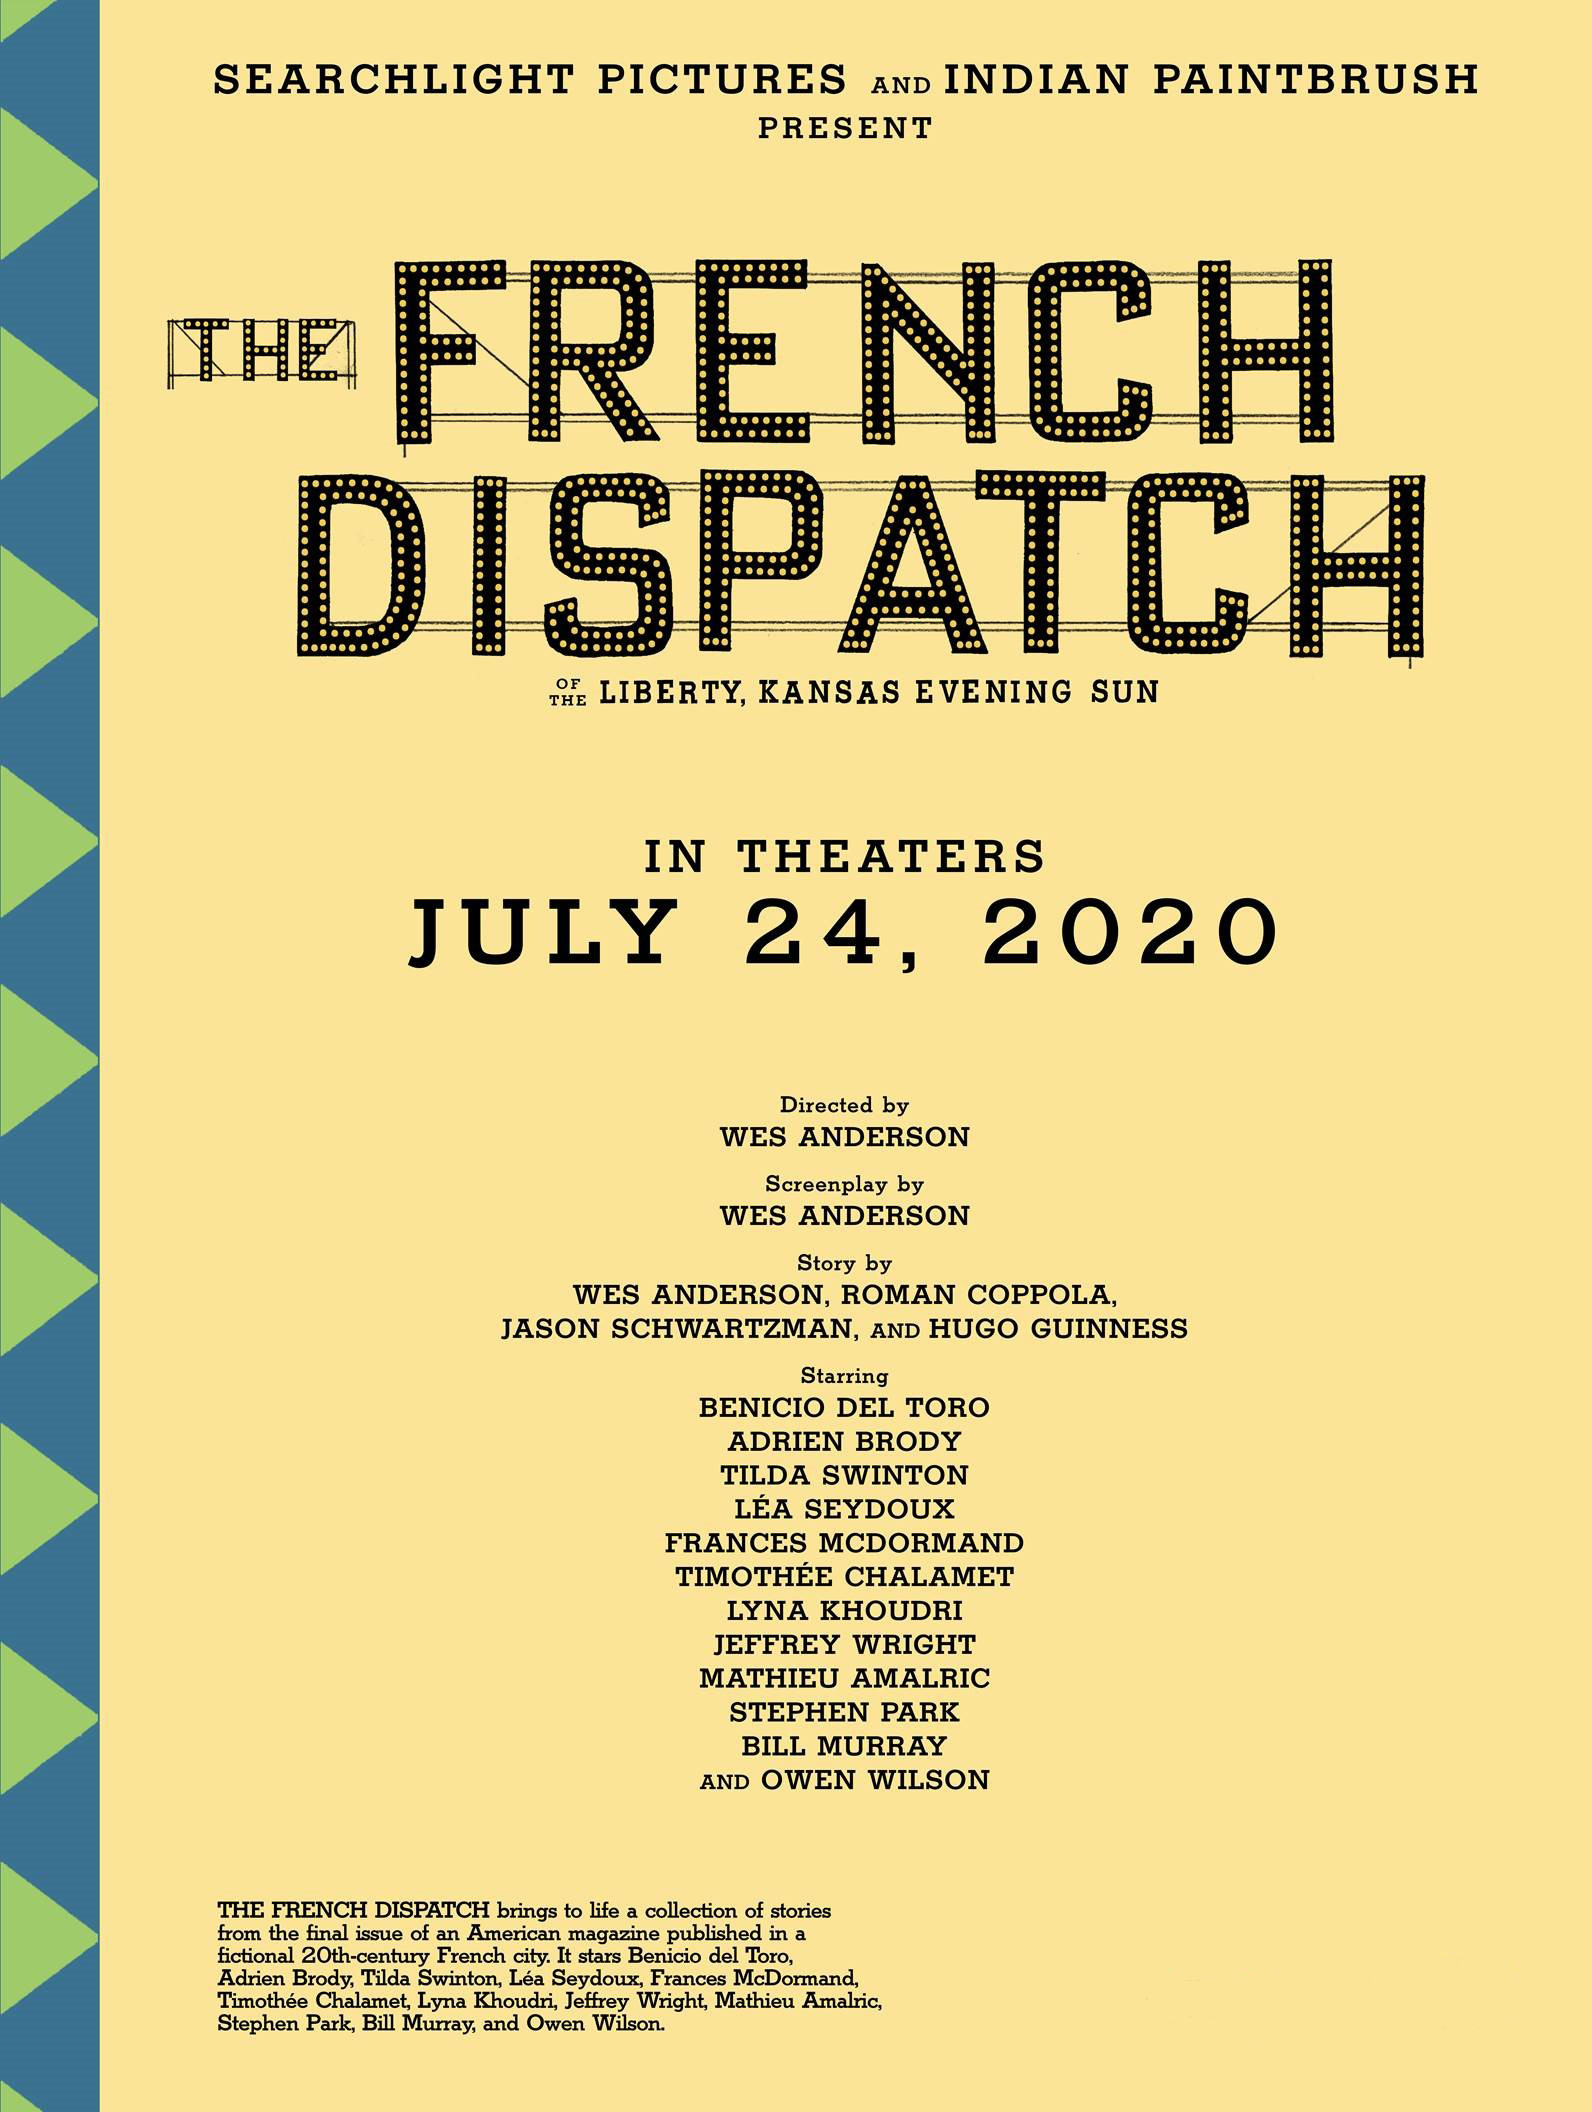 The French Dispatch: Novo filme de Wes Anderson ganha data de estreia1592 x 2112